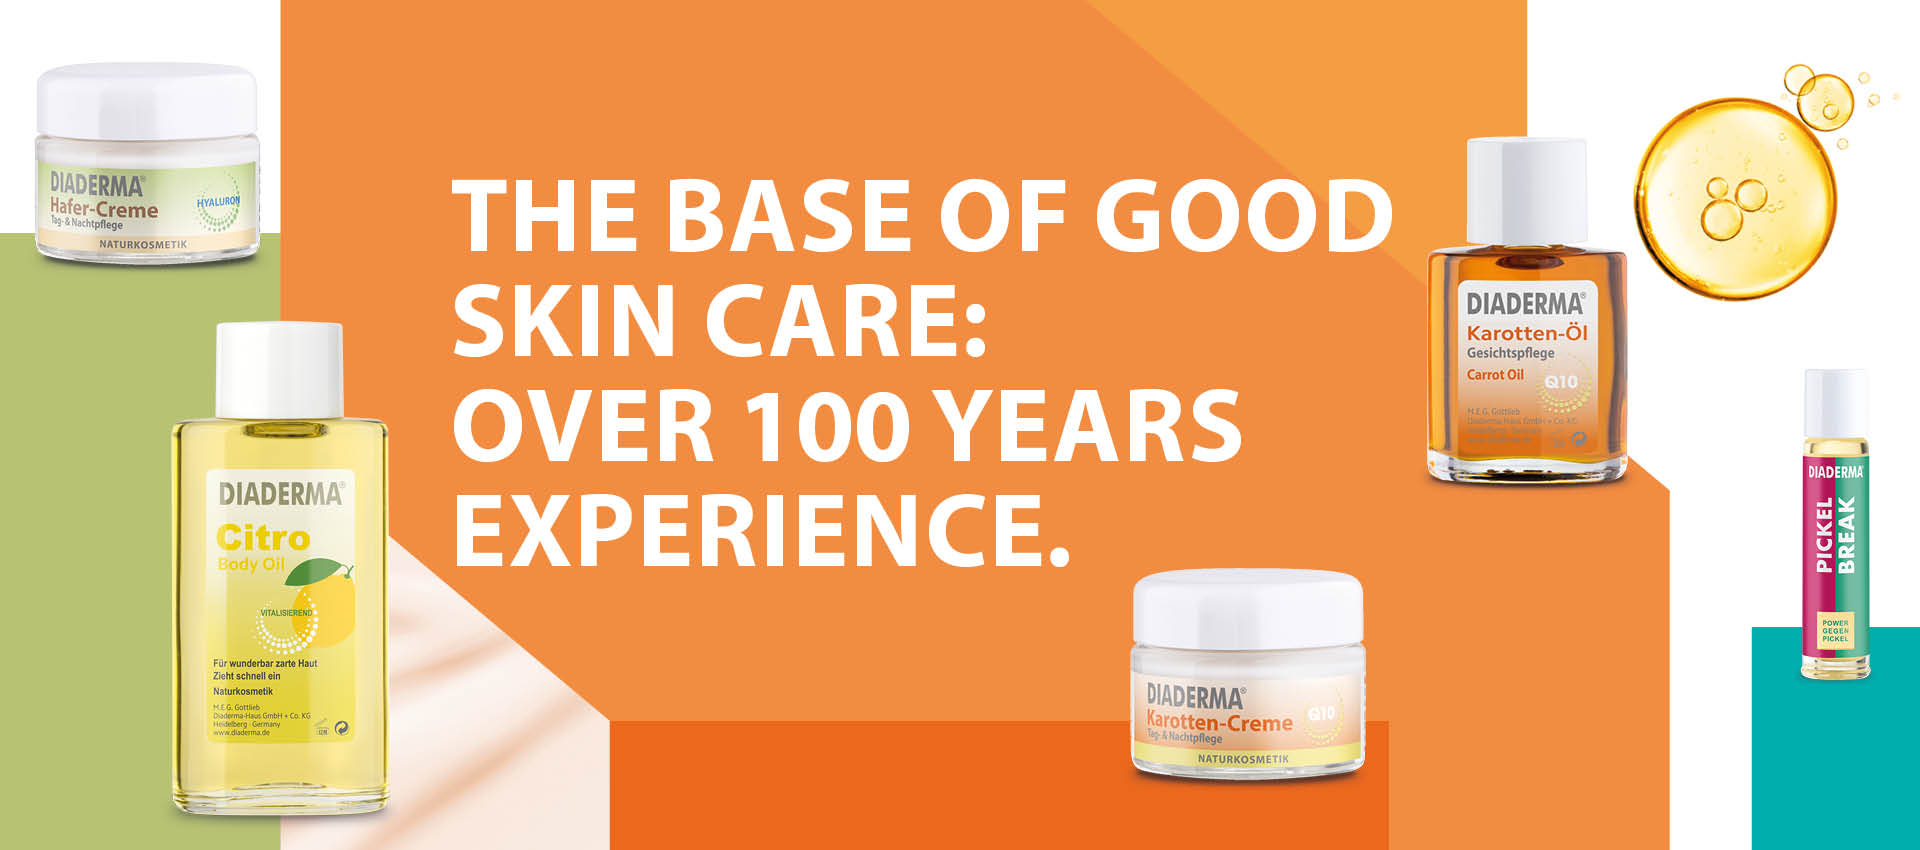 Die Basis guter Hautpflege: über 100 Jahre Erfahrung